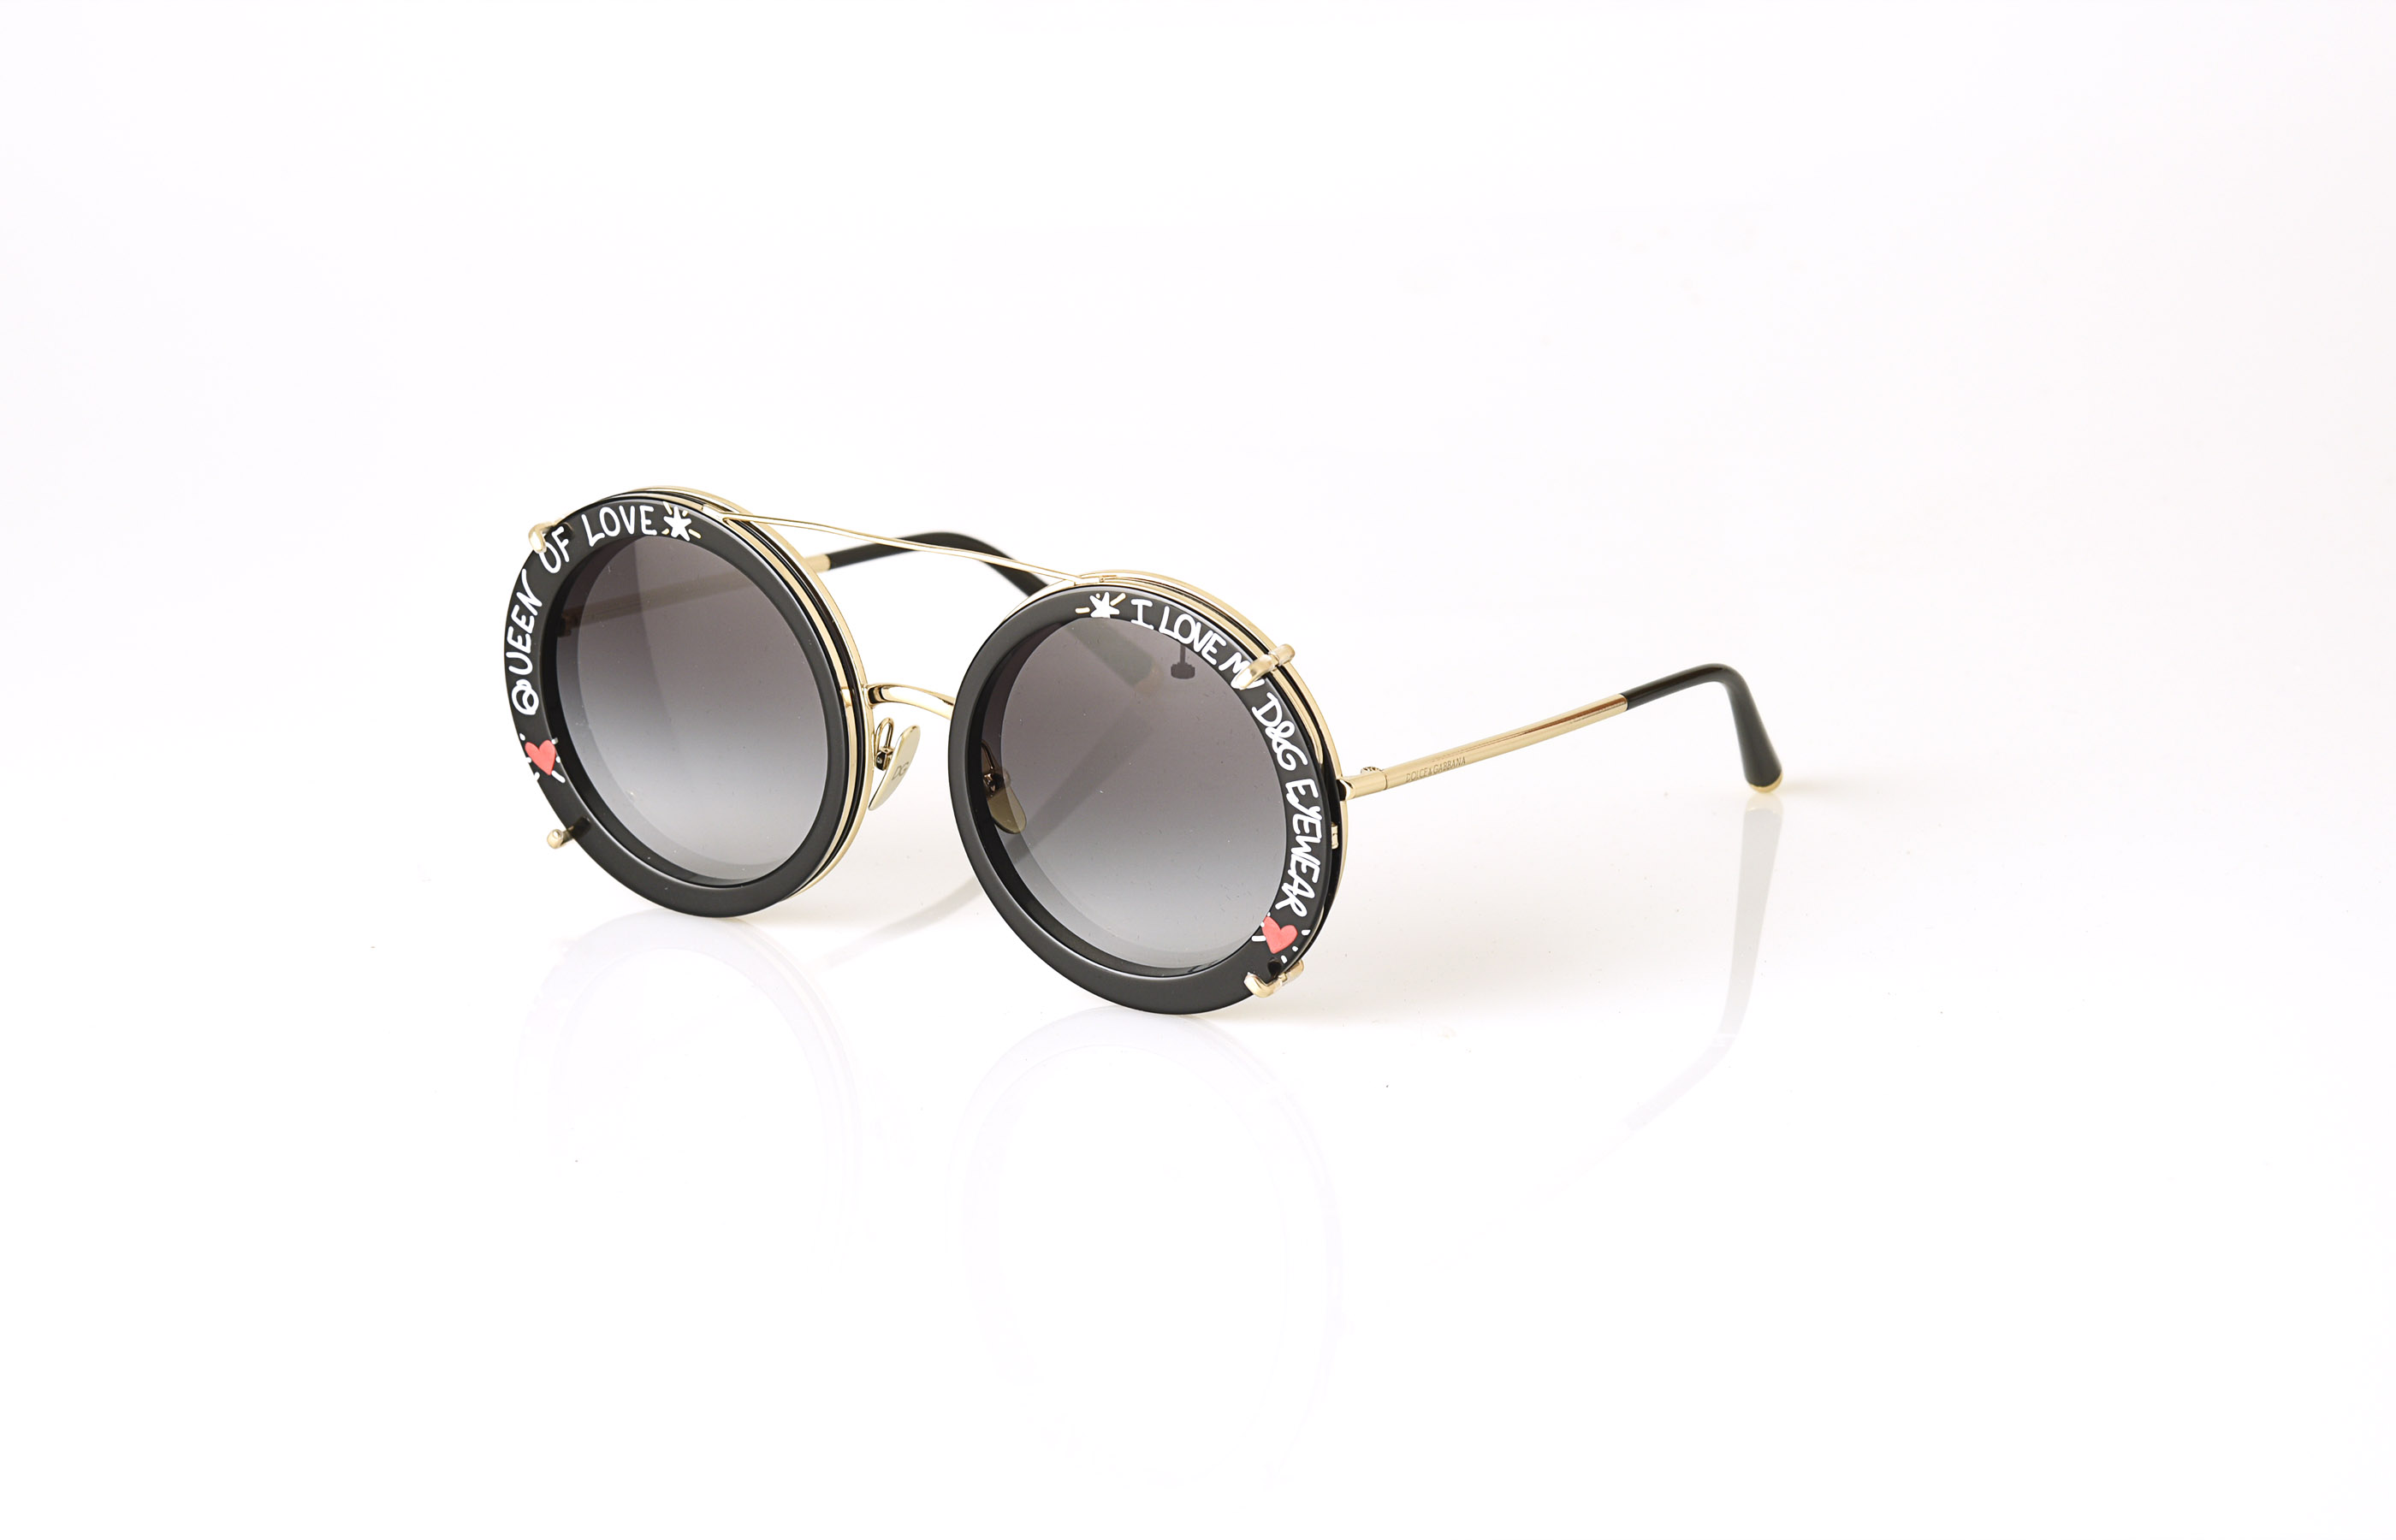 Die Sonnebrille von Dolce & Gabbana aus der Kollektion „Customize Your Eyes“ mit verspieltem Graffiti-Print Clip-on.